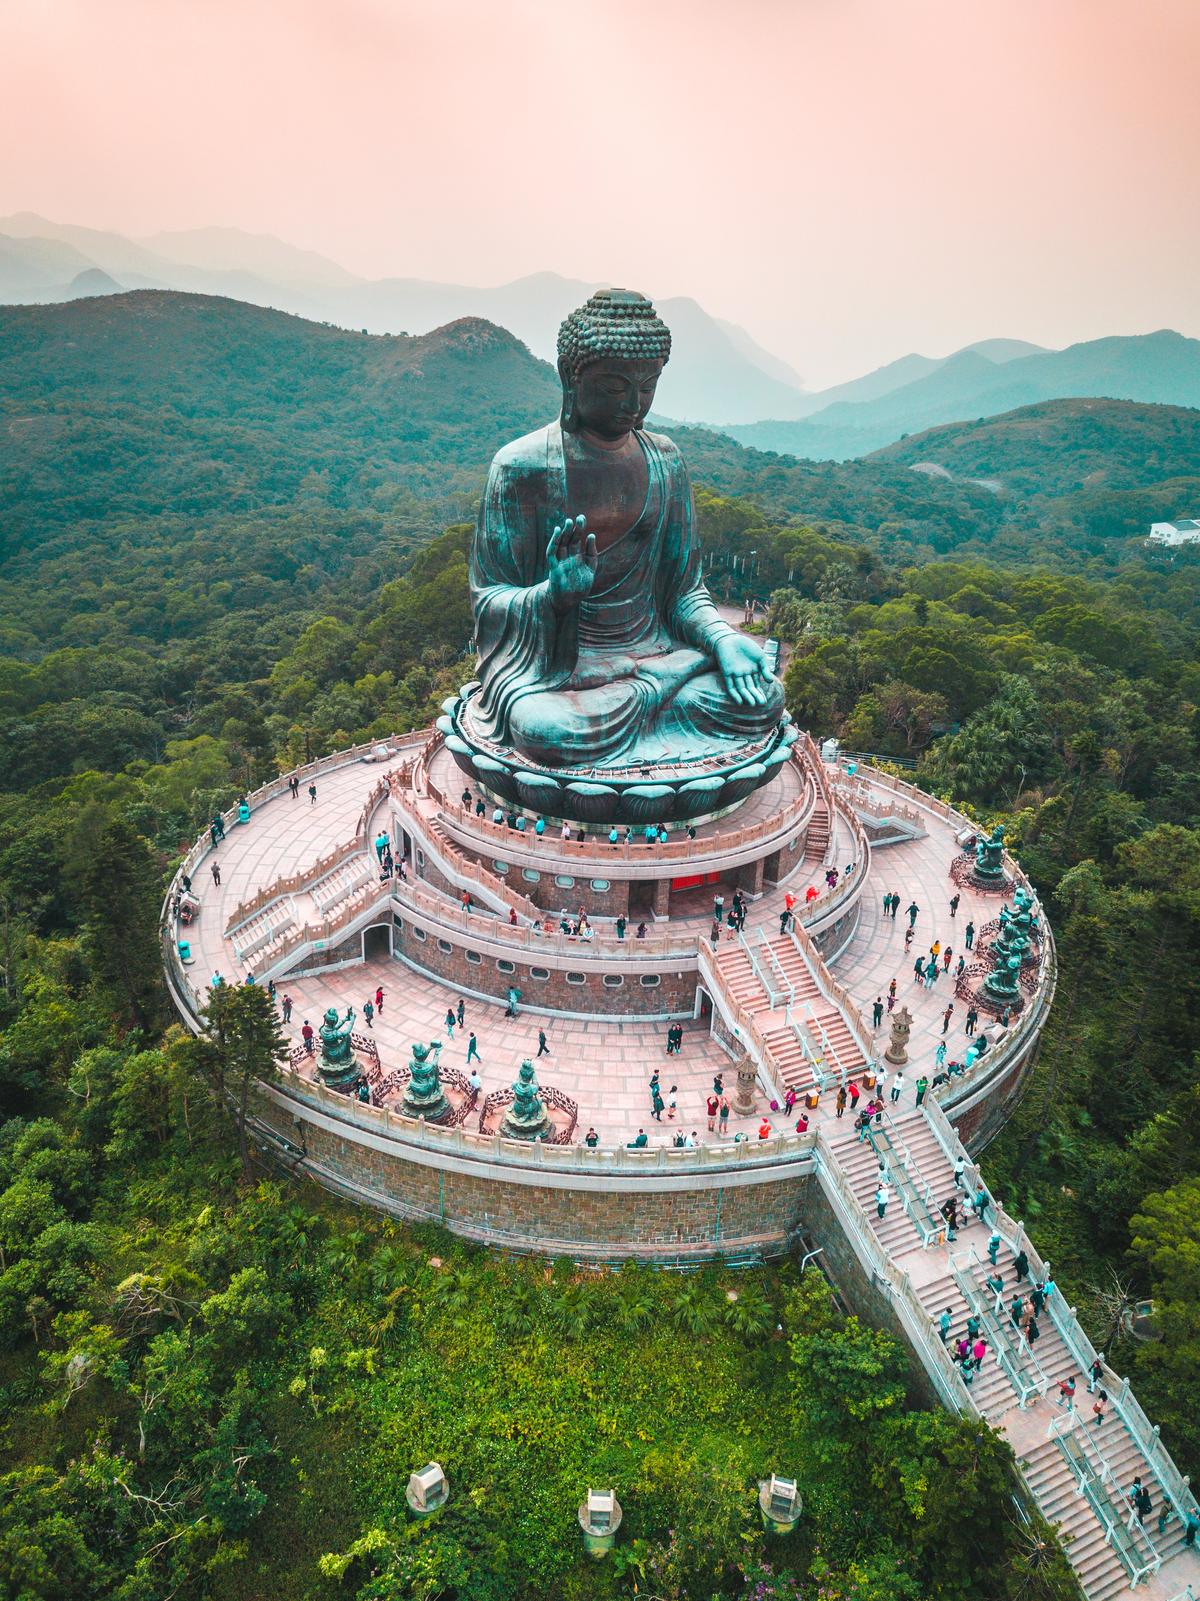 Wielki Budda-Hongkong zdjęcie autorstwa Jasona Coopera